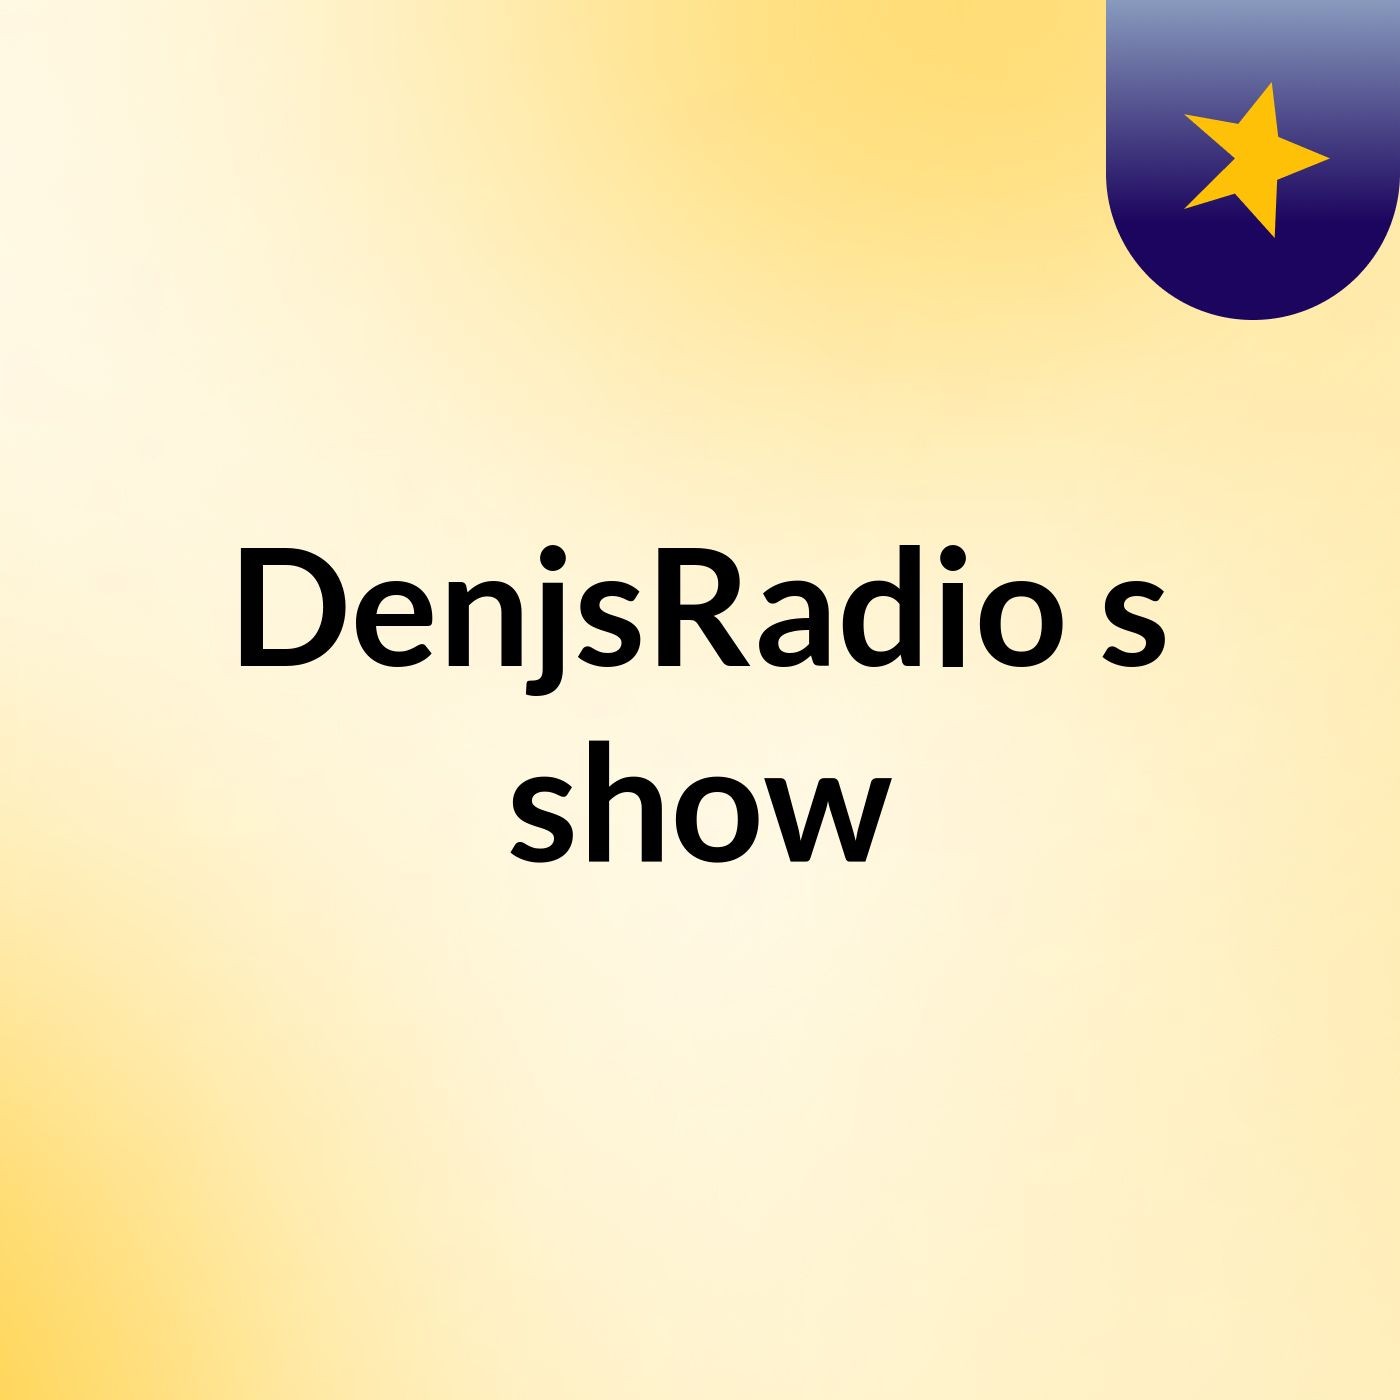 DenjsRadio's show